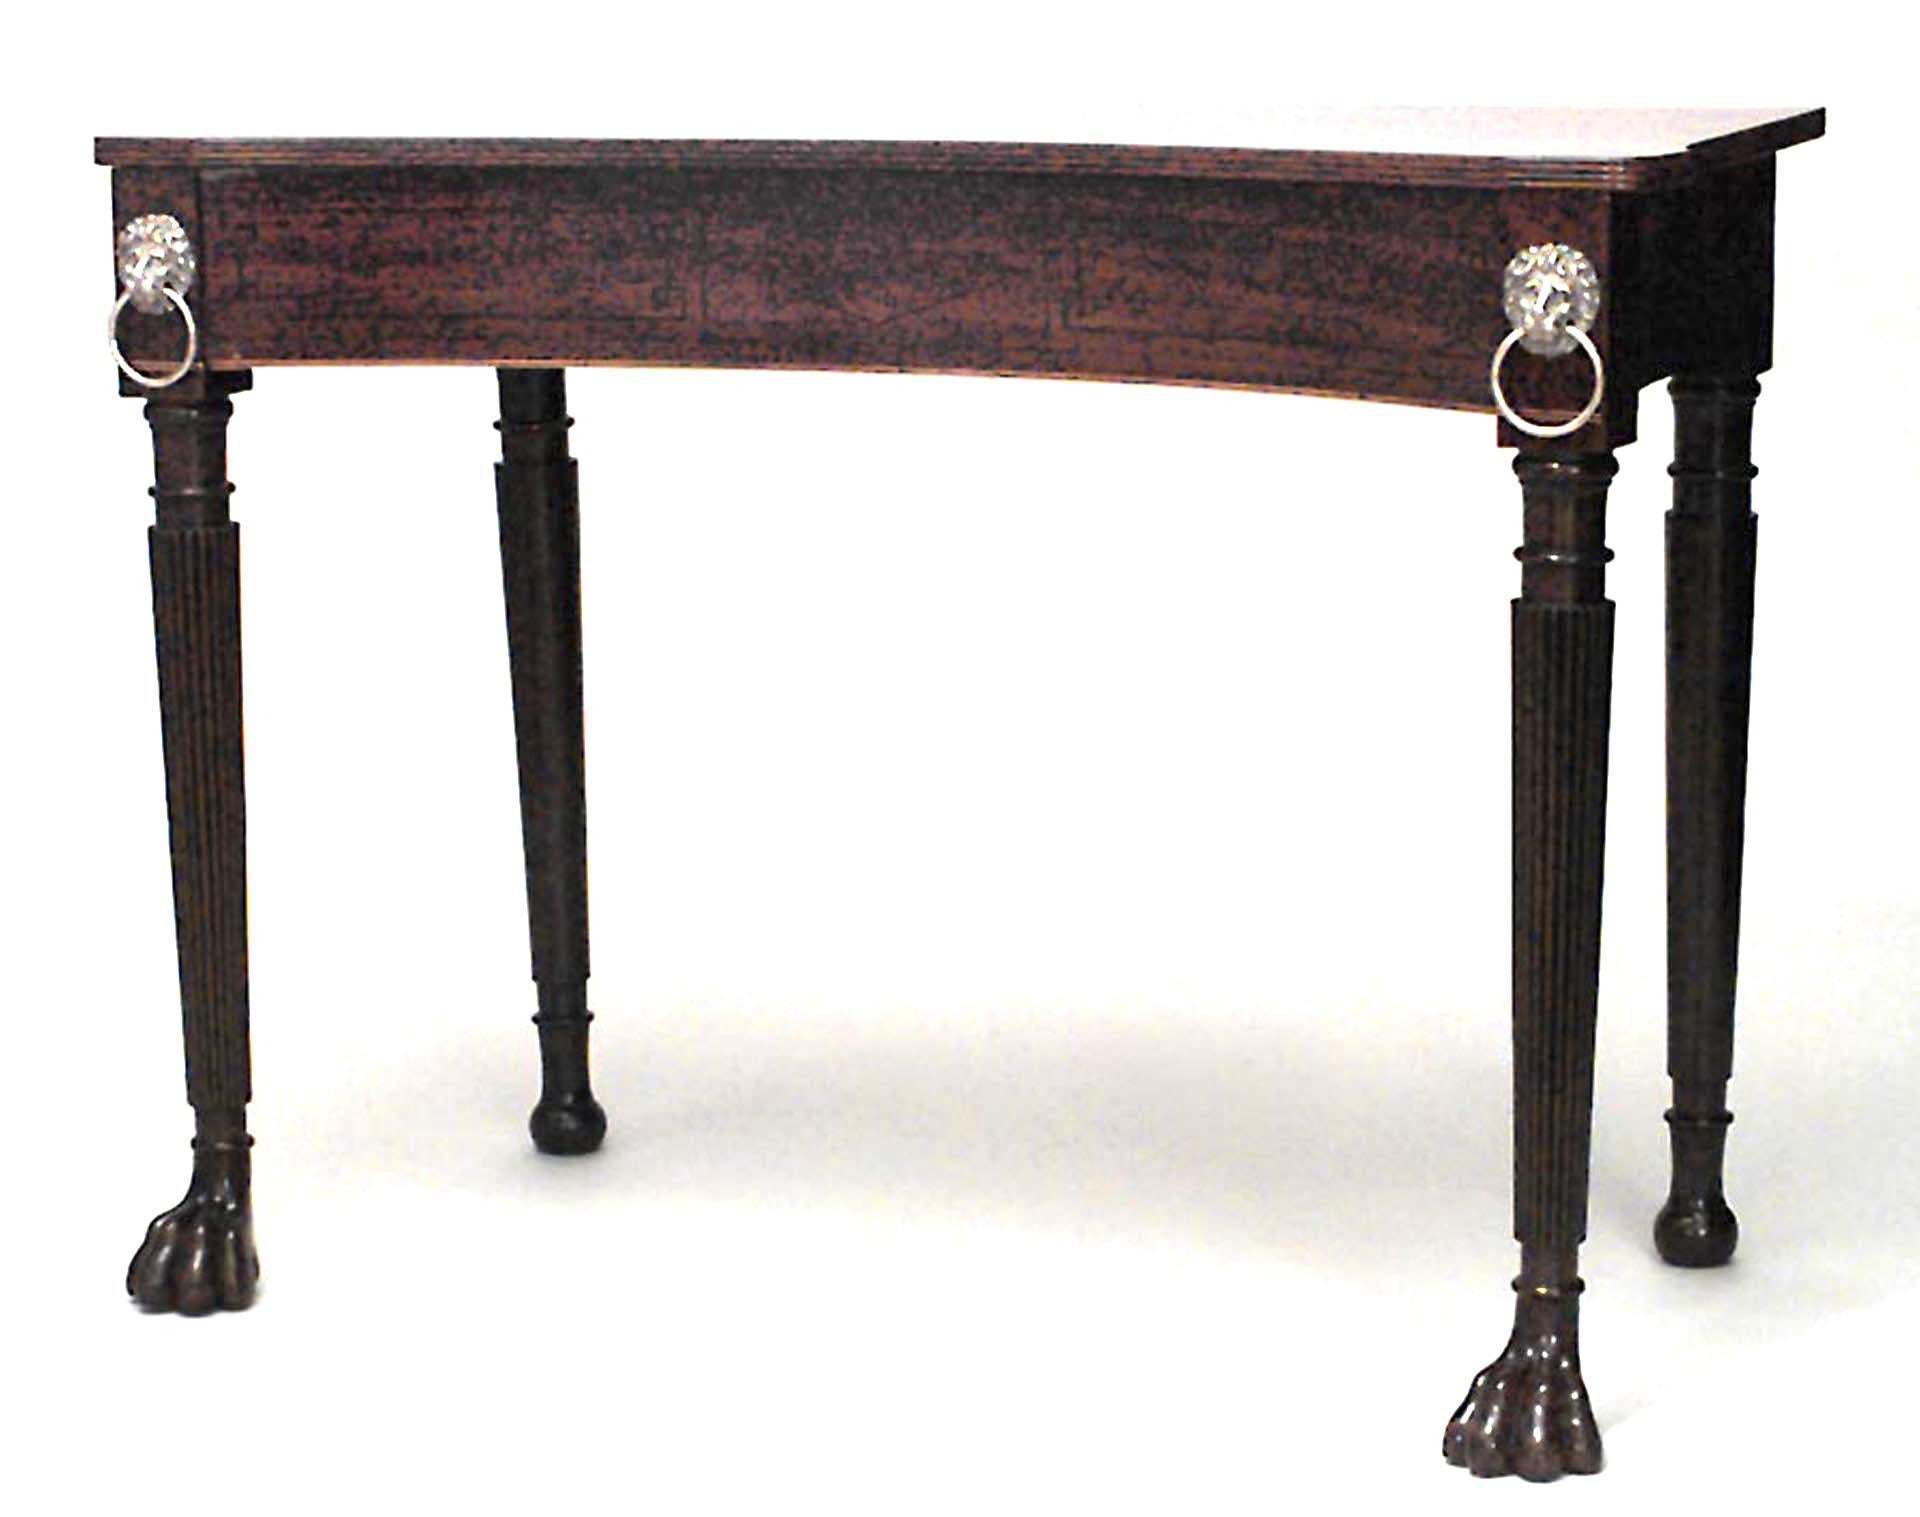 Table console de style Régence anglaise (probablement irlandaise, début du 19e siècle) en acajou marqueté à bandes, avec une façade concave au-dessus de pieds tournés à tête de lion et cannelés, avec des pieds à pattes.
